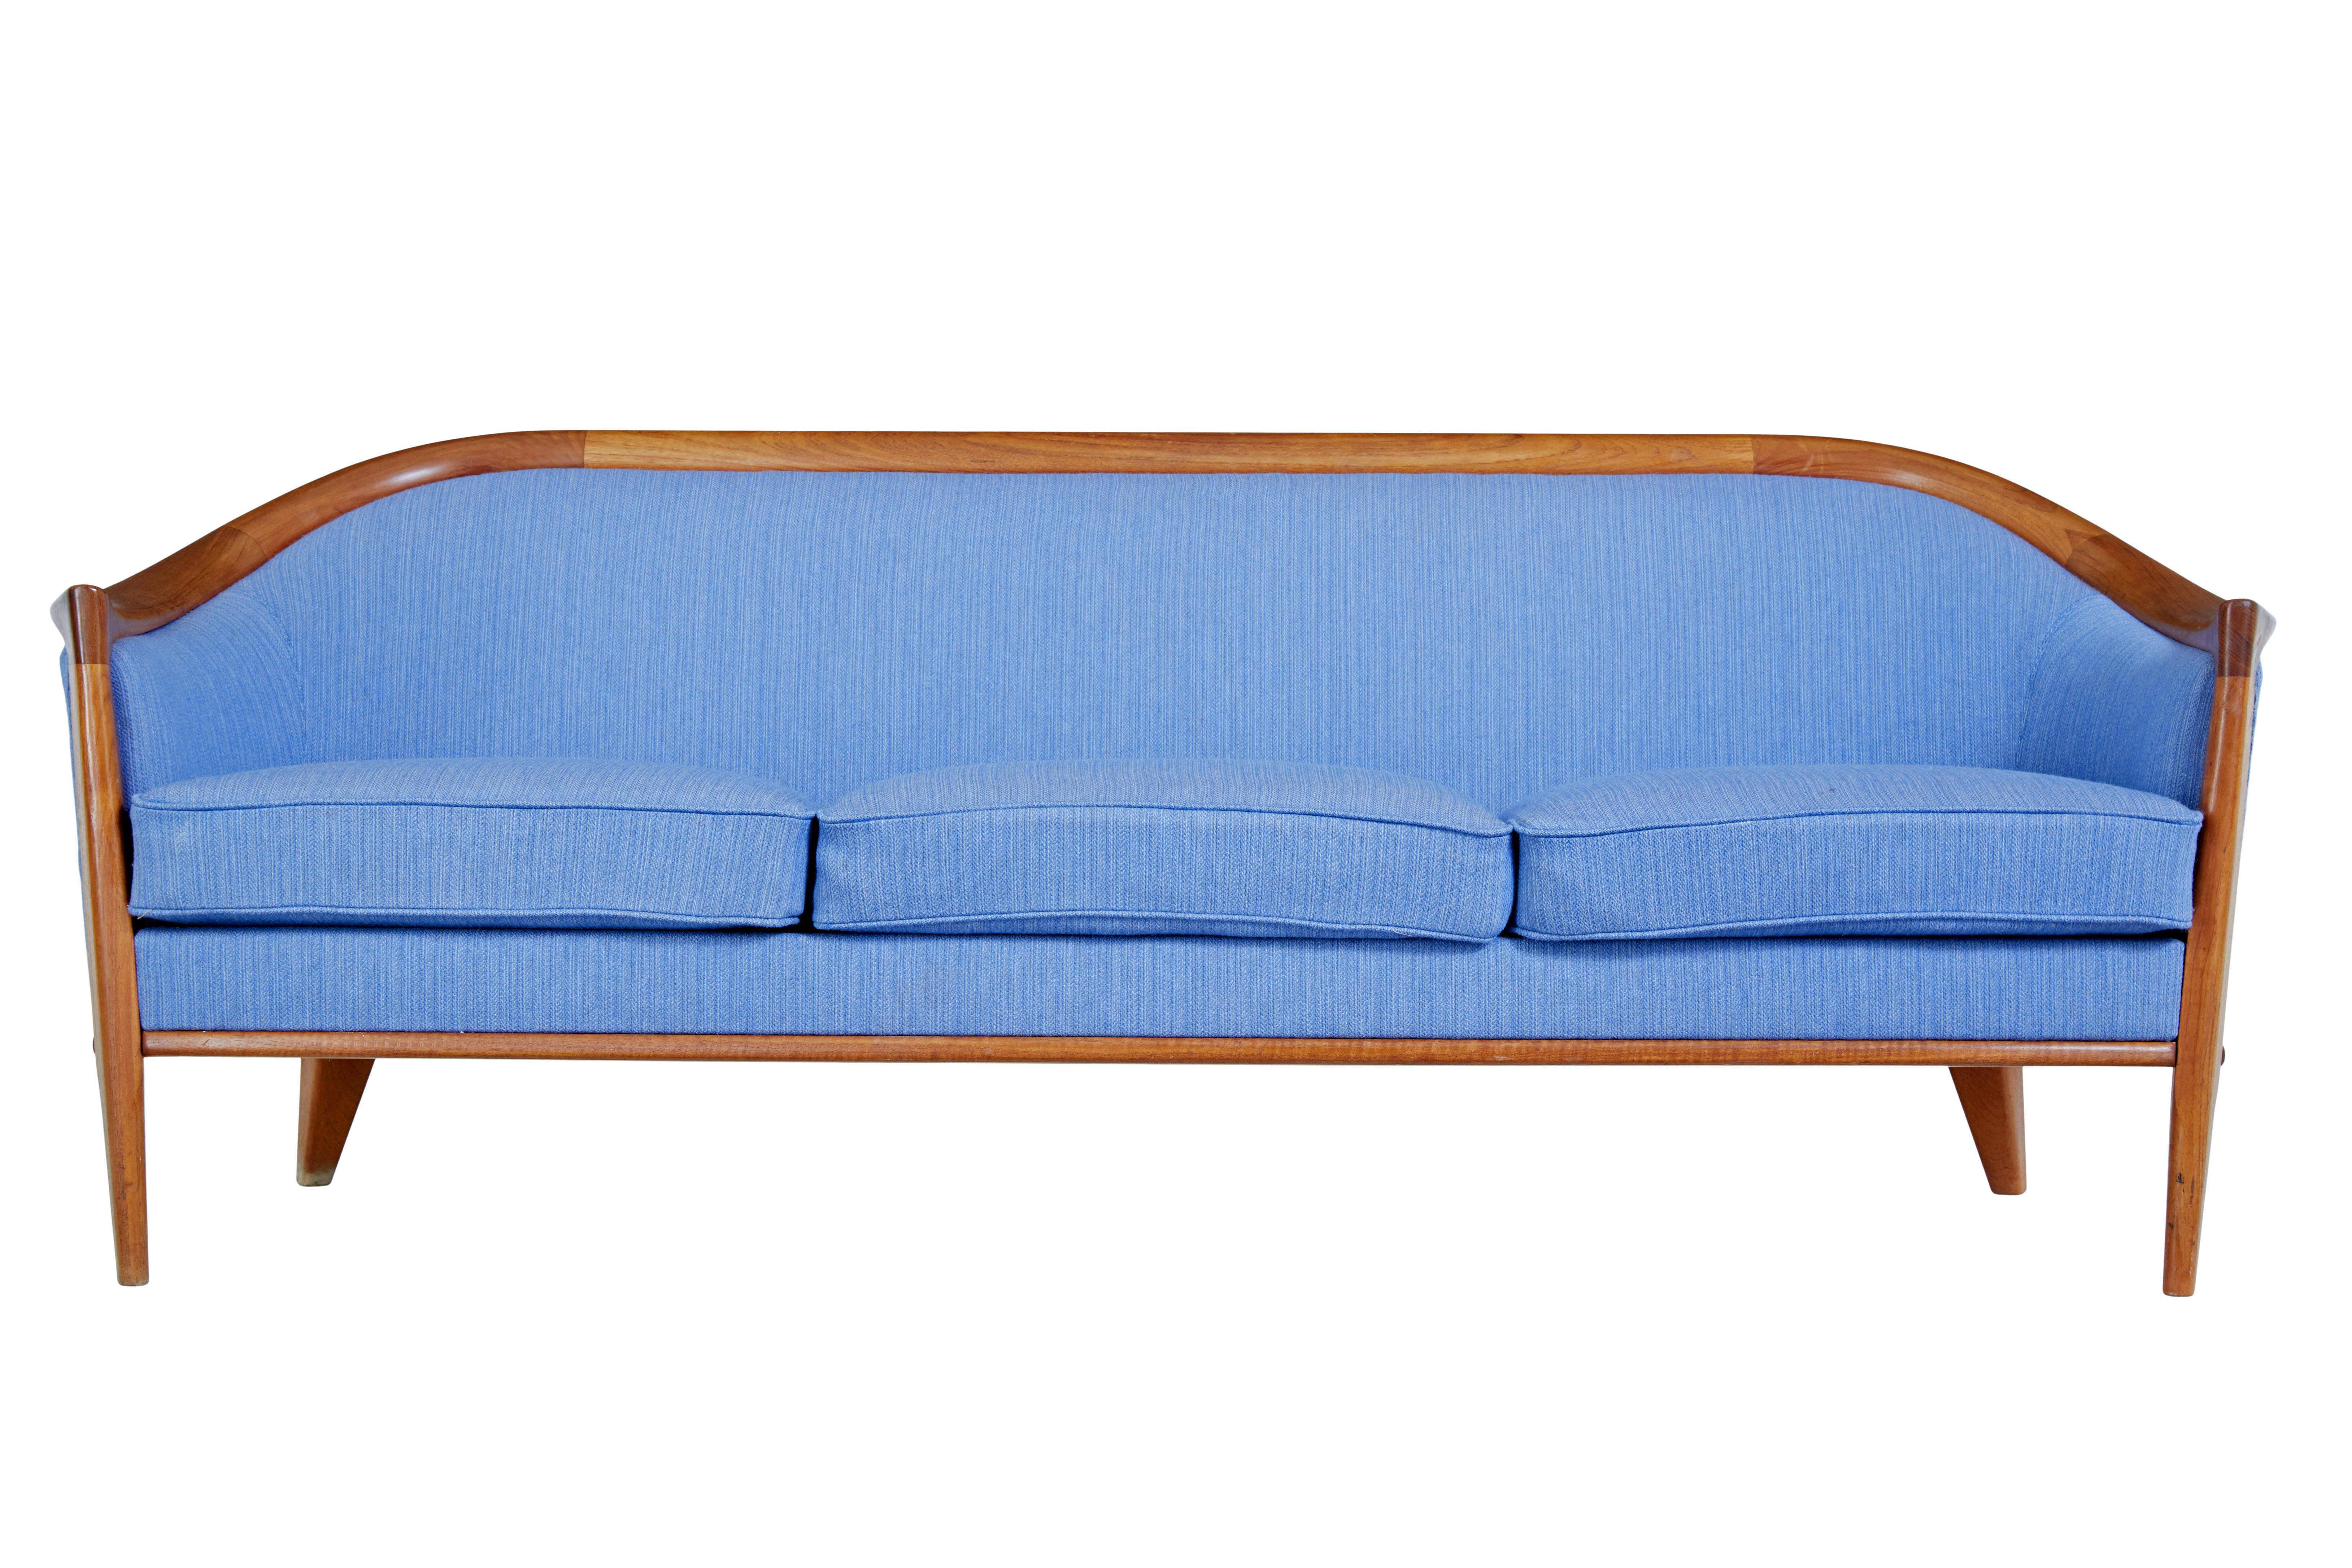 Sofa und Sessel von andersson aus der Mitte des Jahrhunderts, um 1960.

Hier haben wir ein Sofa und einen Sessel, entworfen von Bertil Frighagen für Broderna Anderson.  Bekannt als das Aristokratenmodell und bekannt für seine hufeisenförmigen